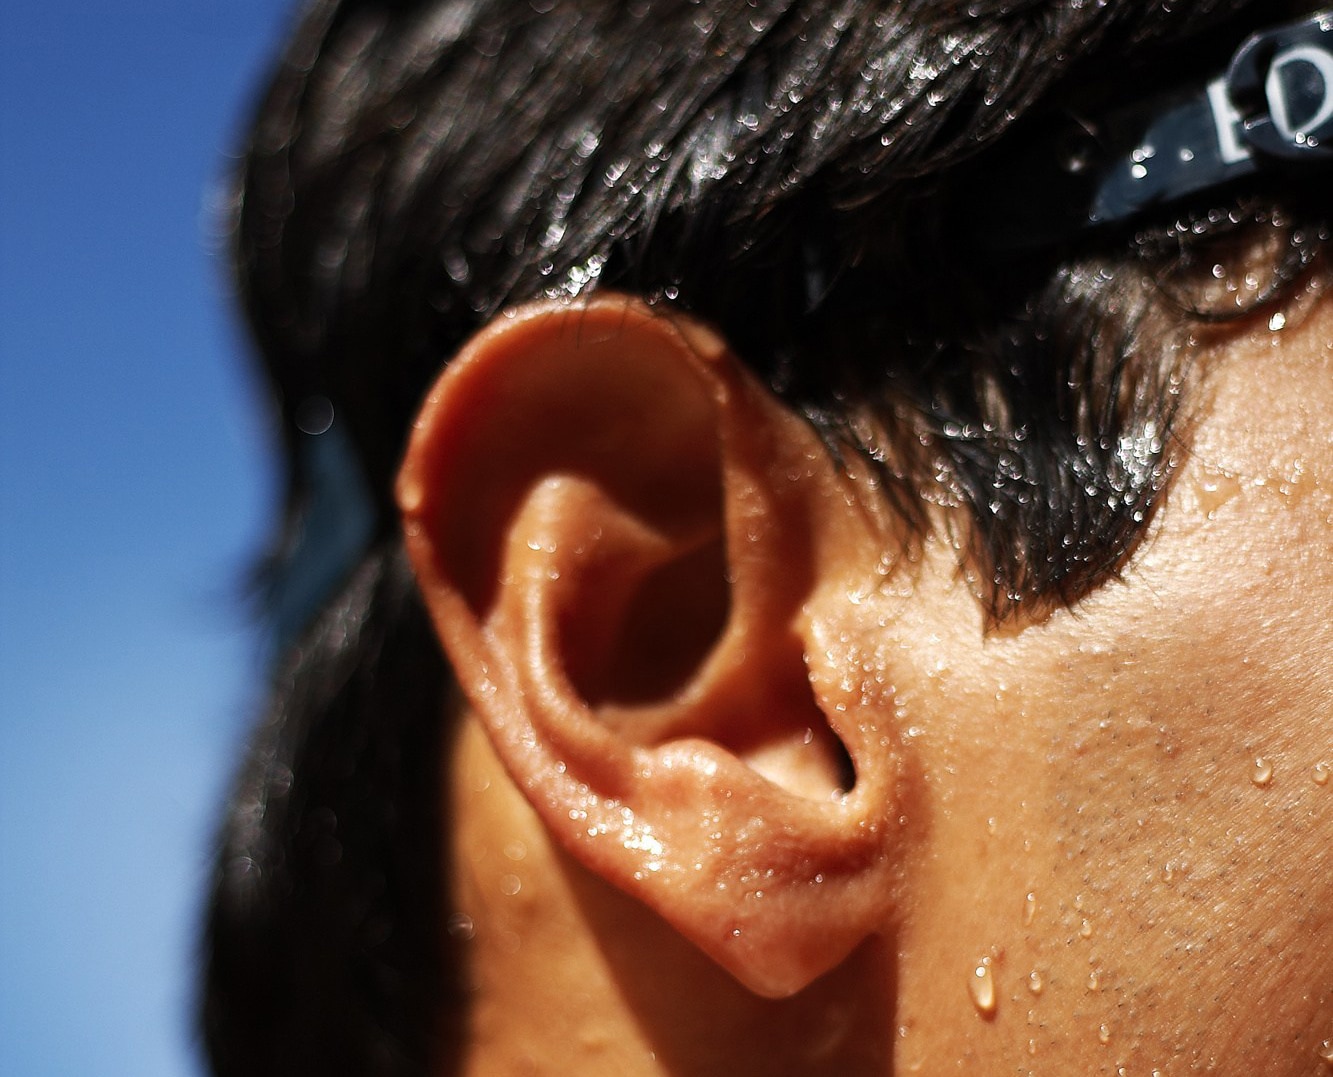 Viêm tai ngoài (Swimmer’s ear) mùa nắng nóng: Nhận biết dấu hiệu sớm và cách phòng ngừa